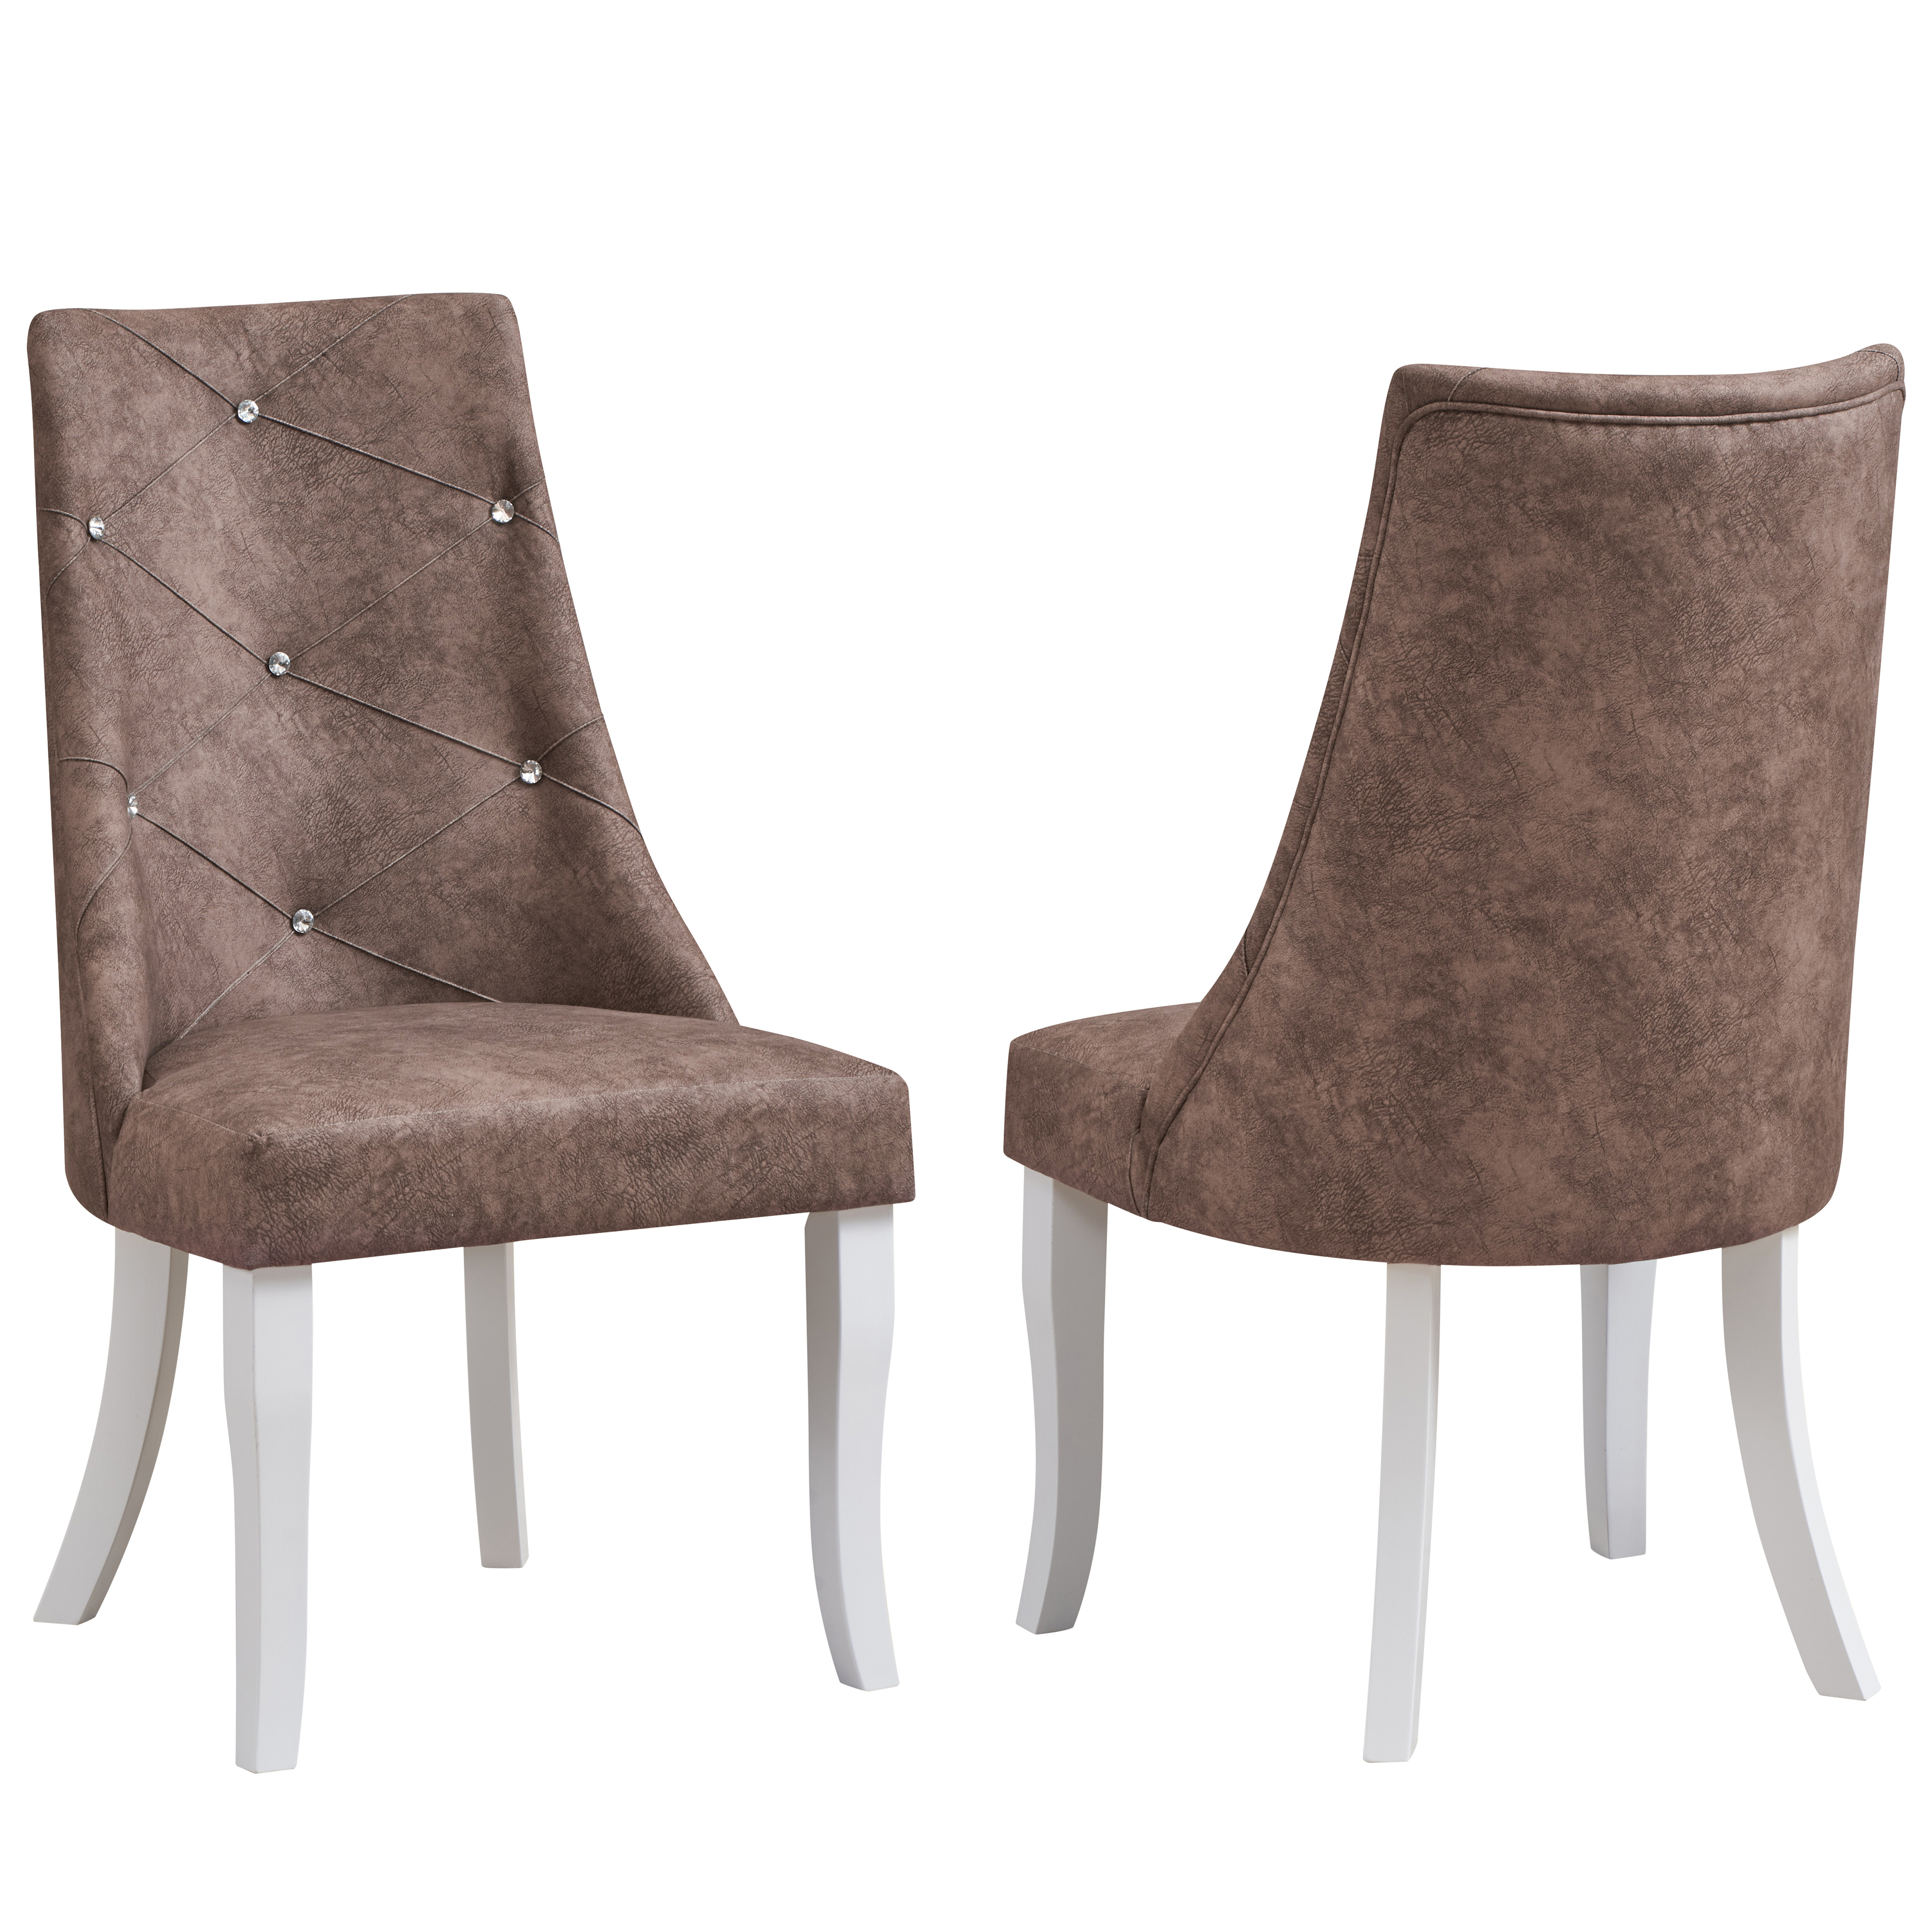 Skyrah Dining Chairs (Dark Brown) - Set of 2